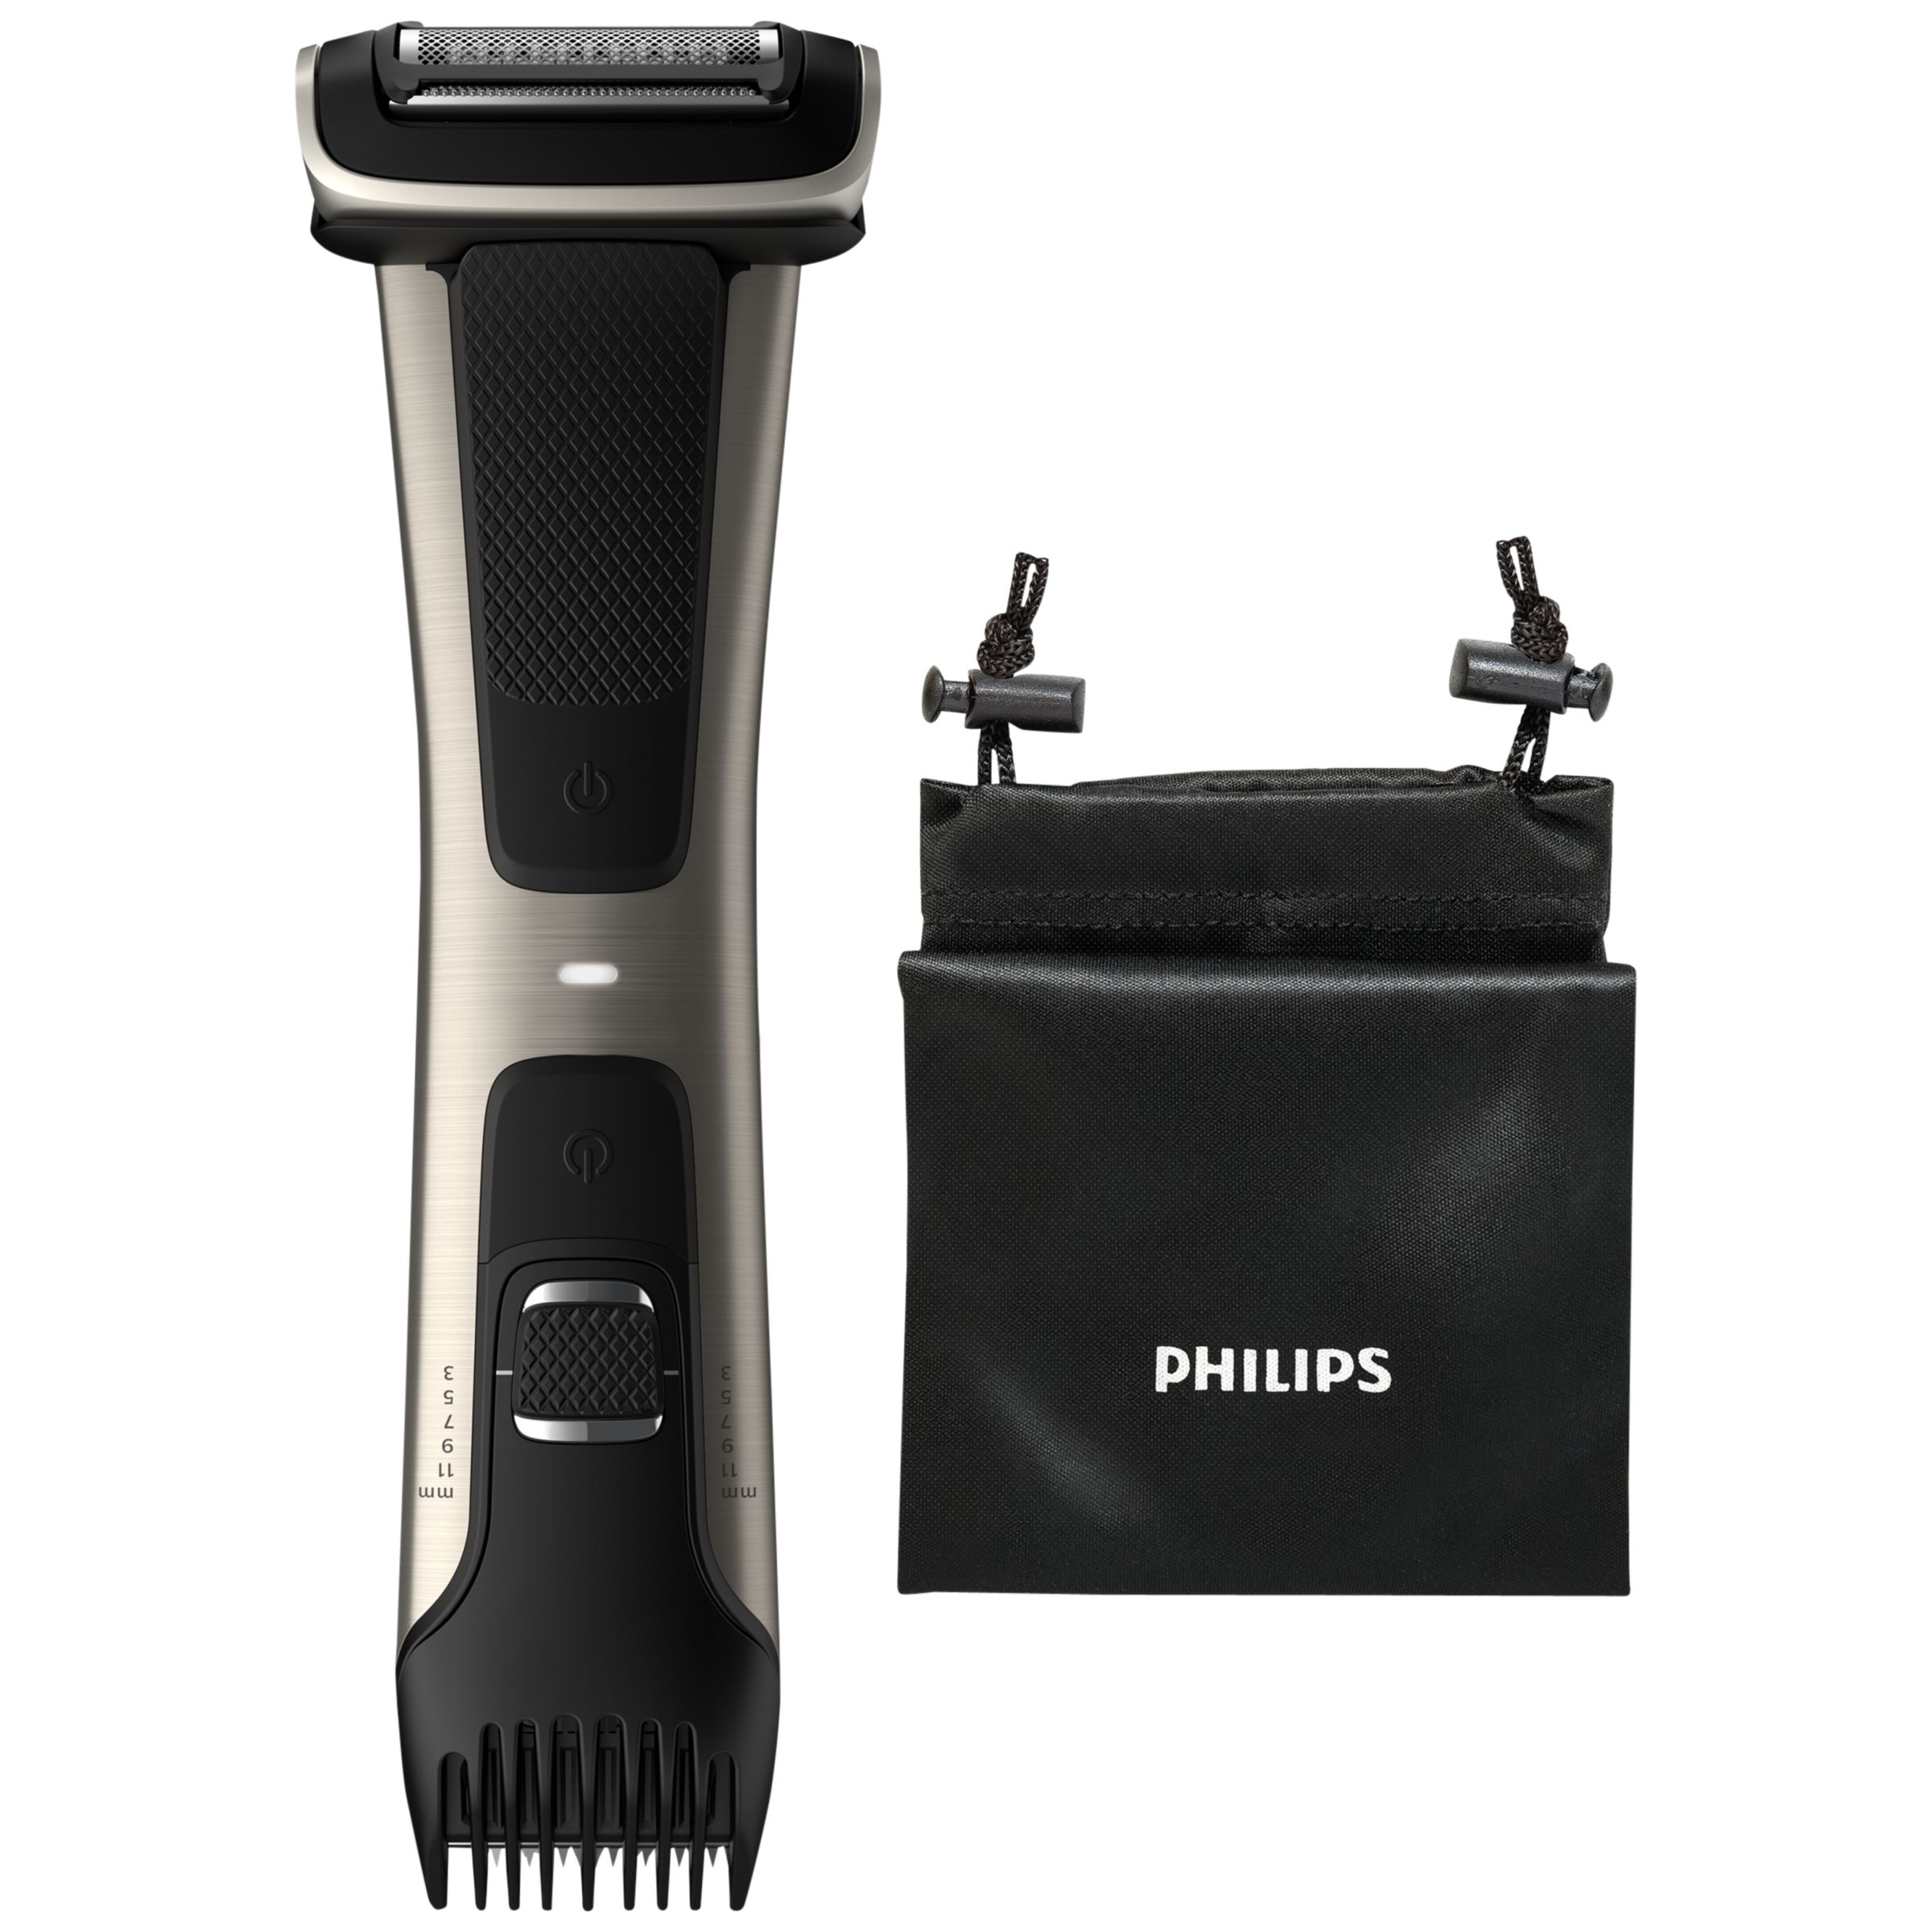 Philips BG7025/13 Series 7000 Body Groomer & Trimmer, Black